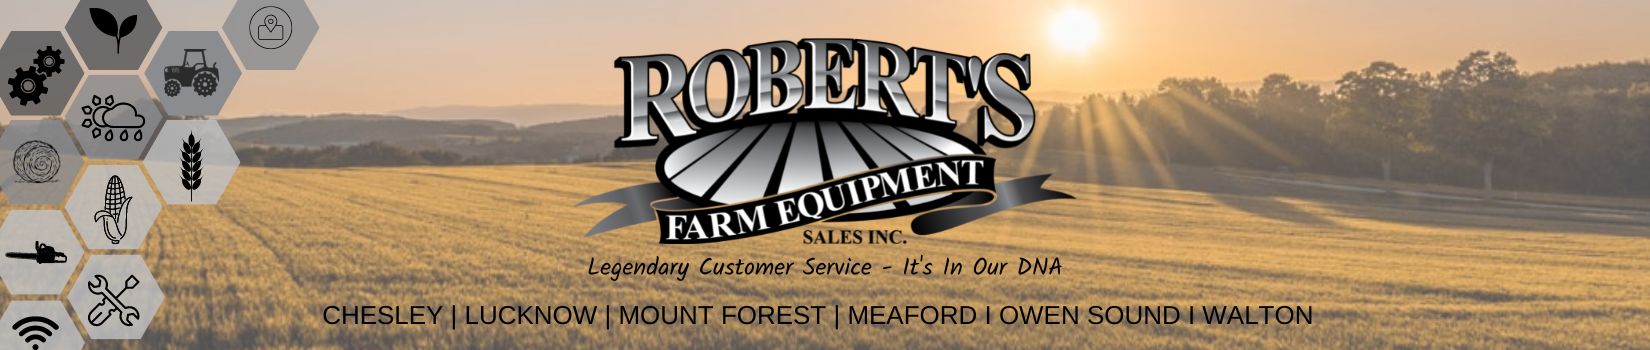 Robert's  Farm Equipment Sales Inc.